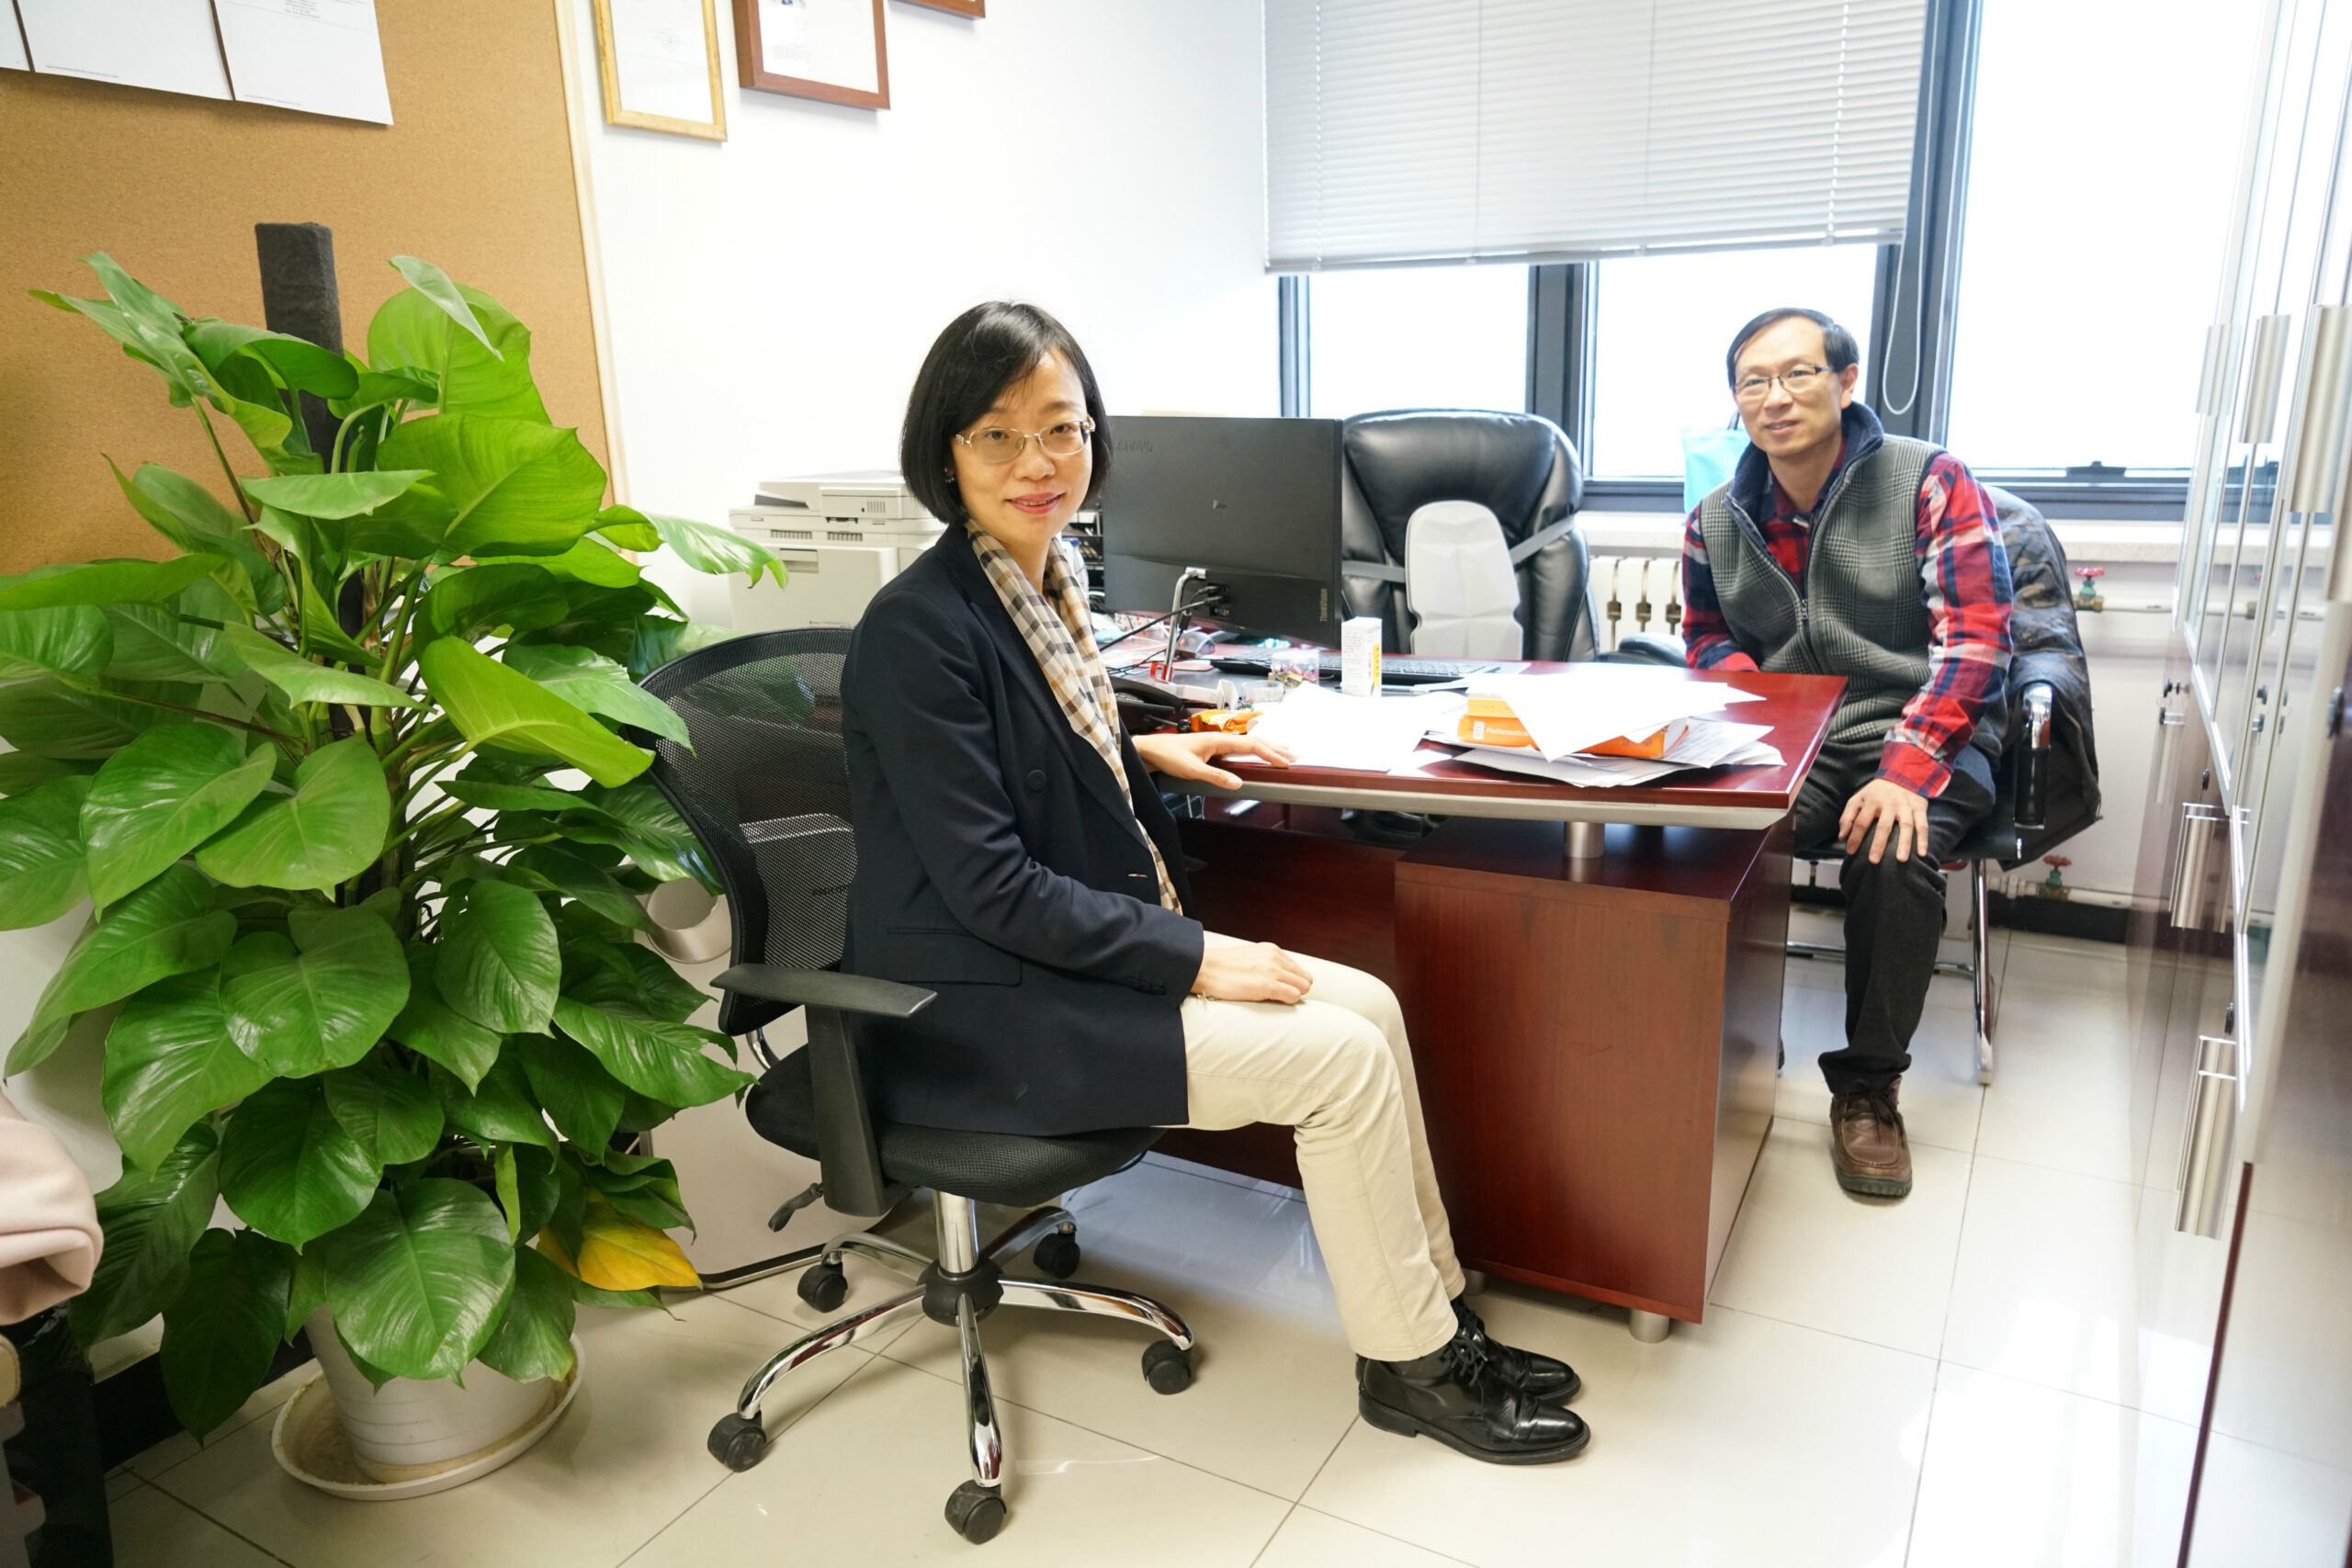 【学术活动】四川大学赵莉教授访问我中心并做学术报告